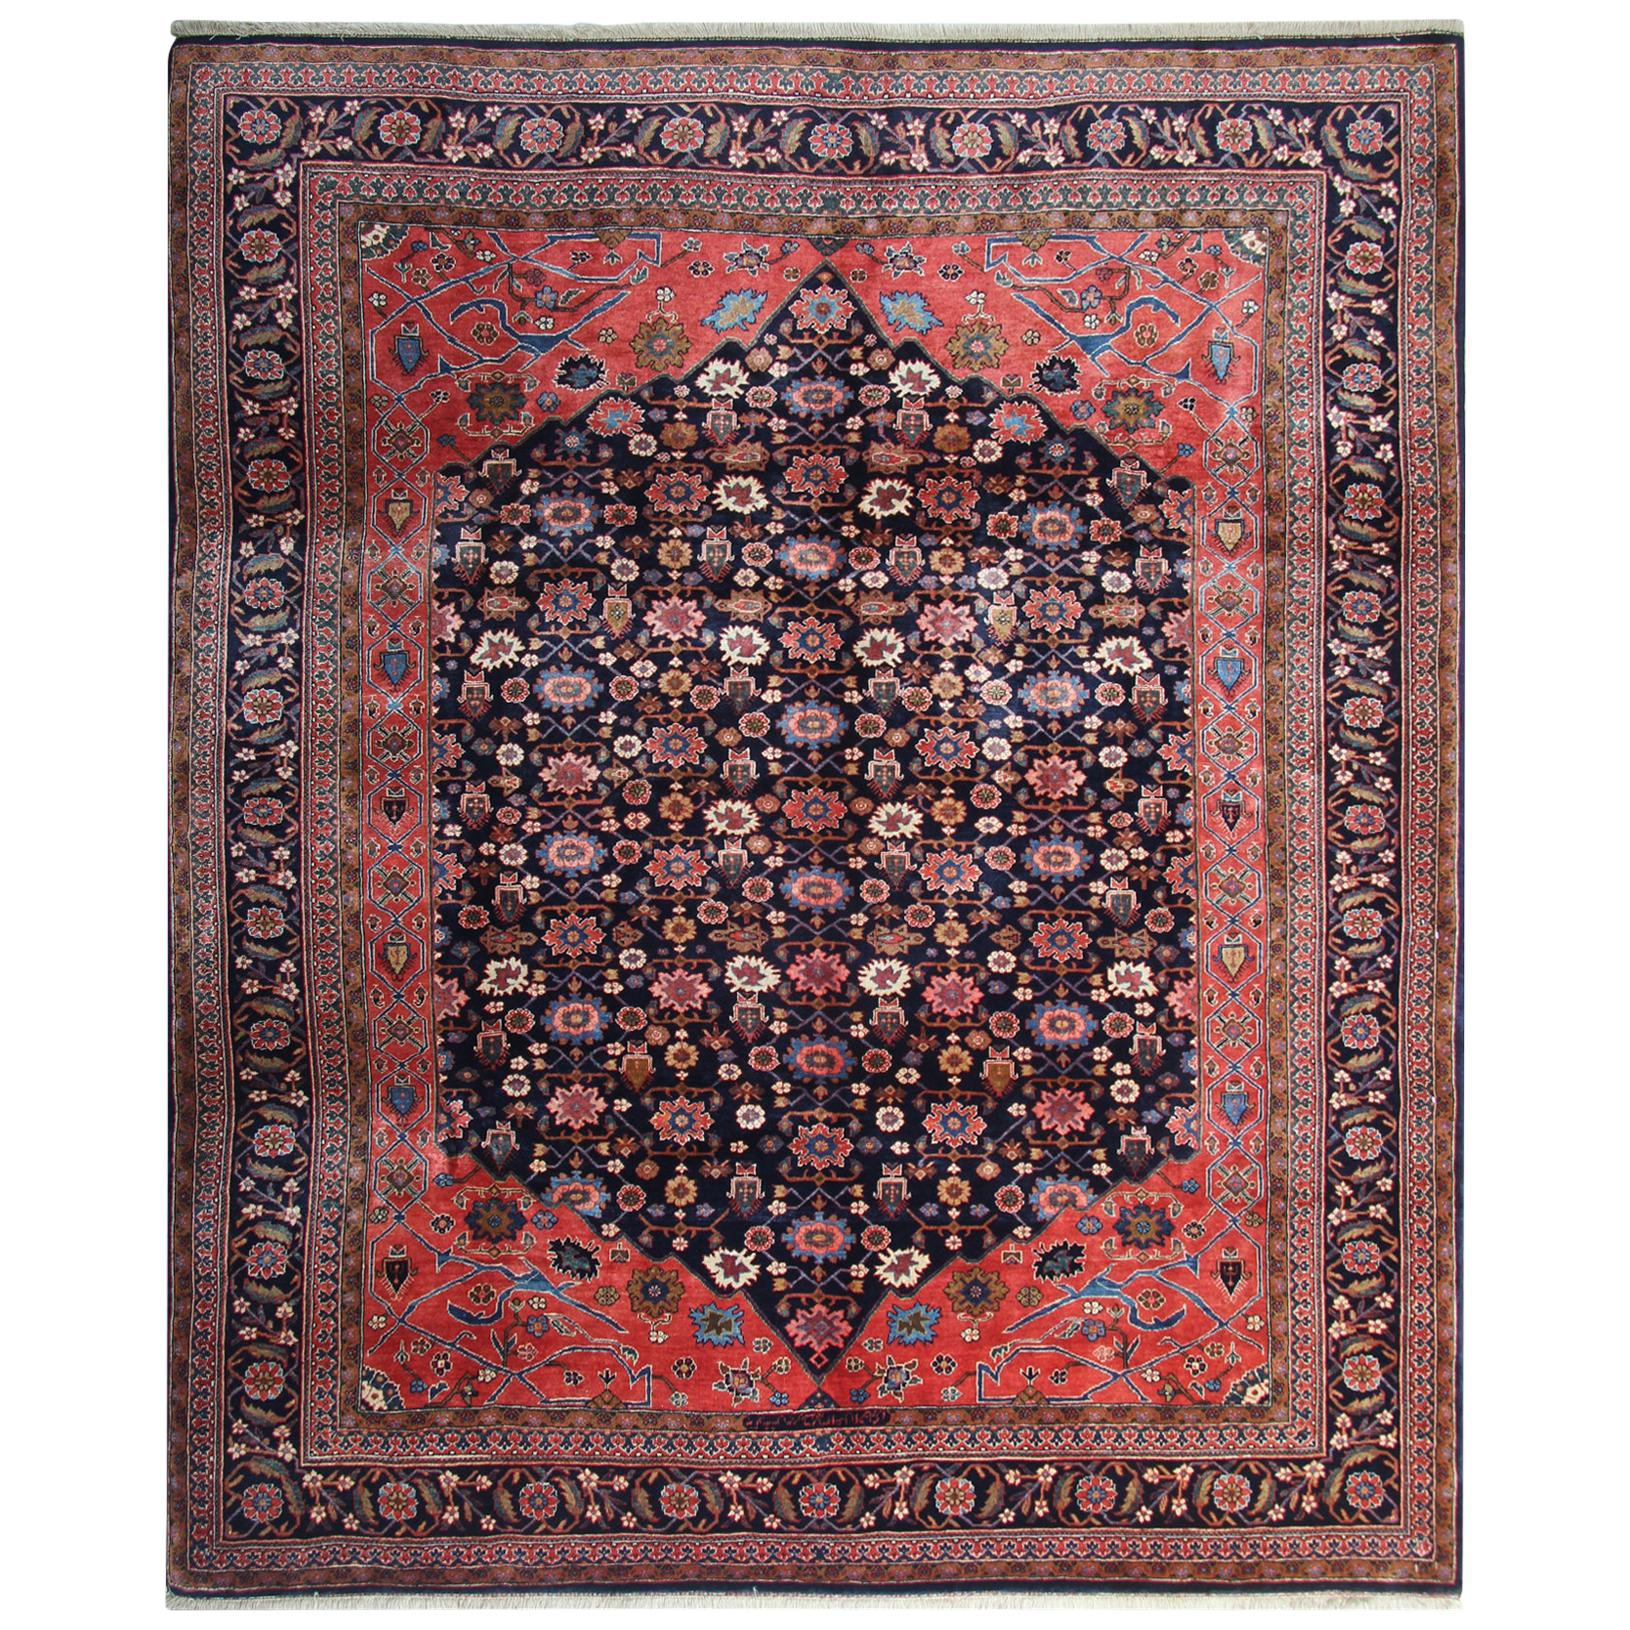 Handmade Carpet Oriental Rug Wool Red Floral Traditional Livingroom Rug